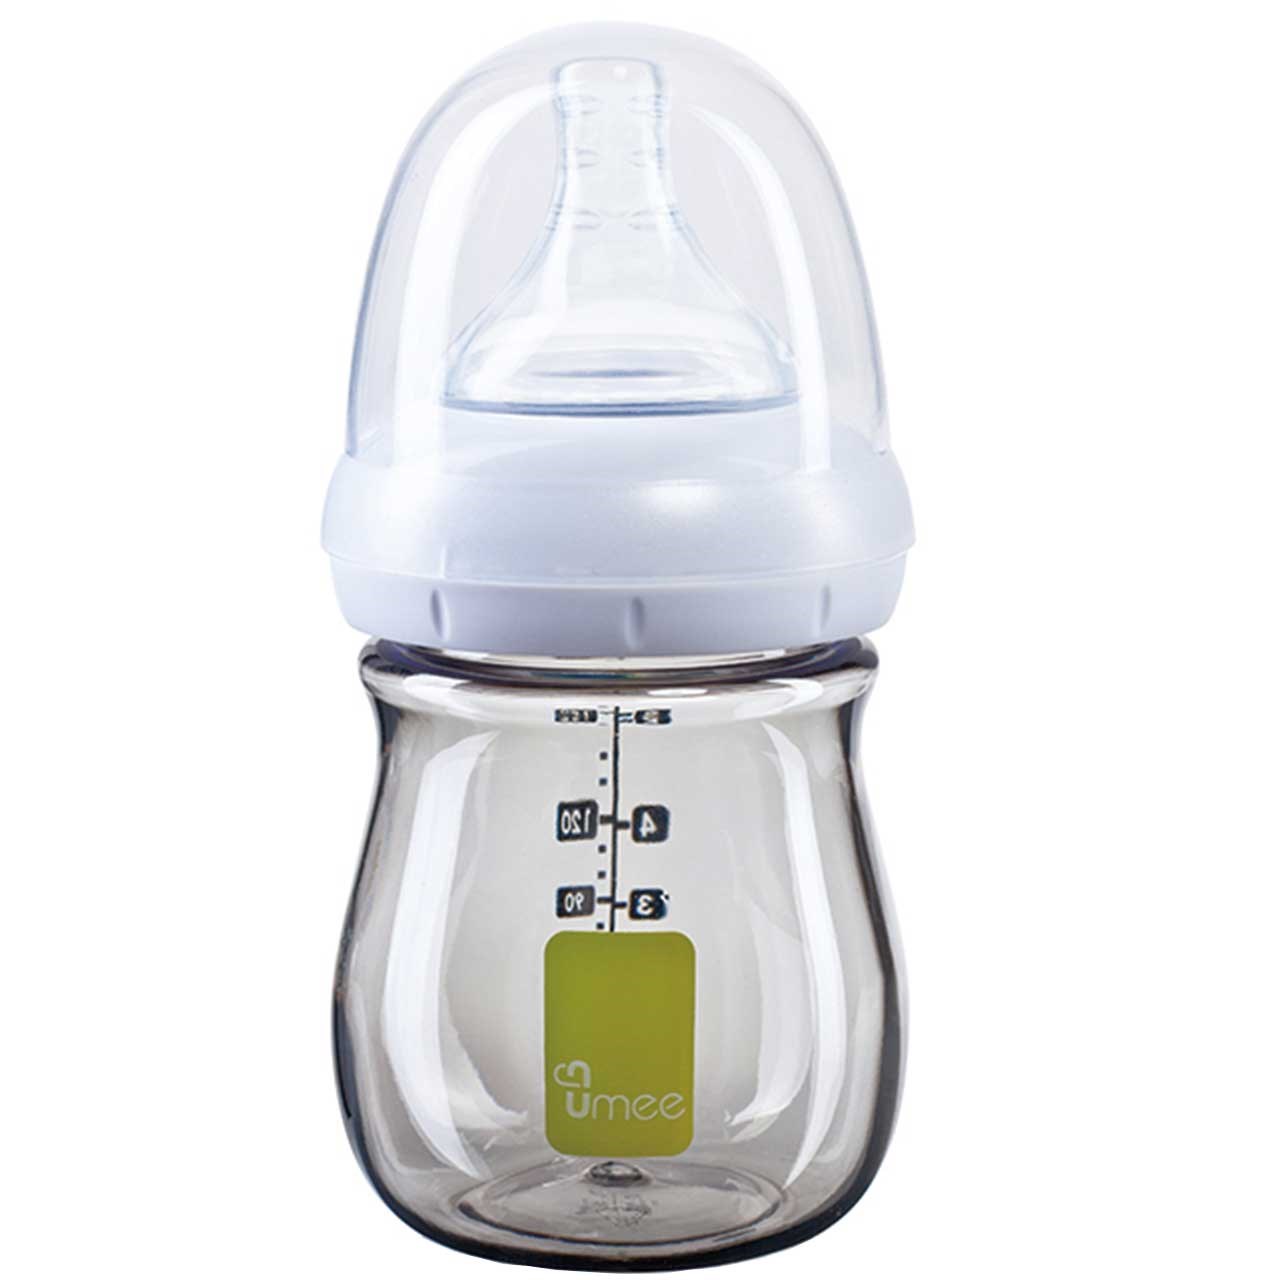 شیشه شیر یومیی مدل N100007-G ظرفیت 160 میلی لیتر